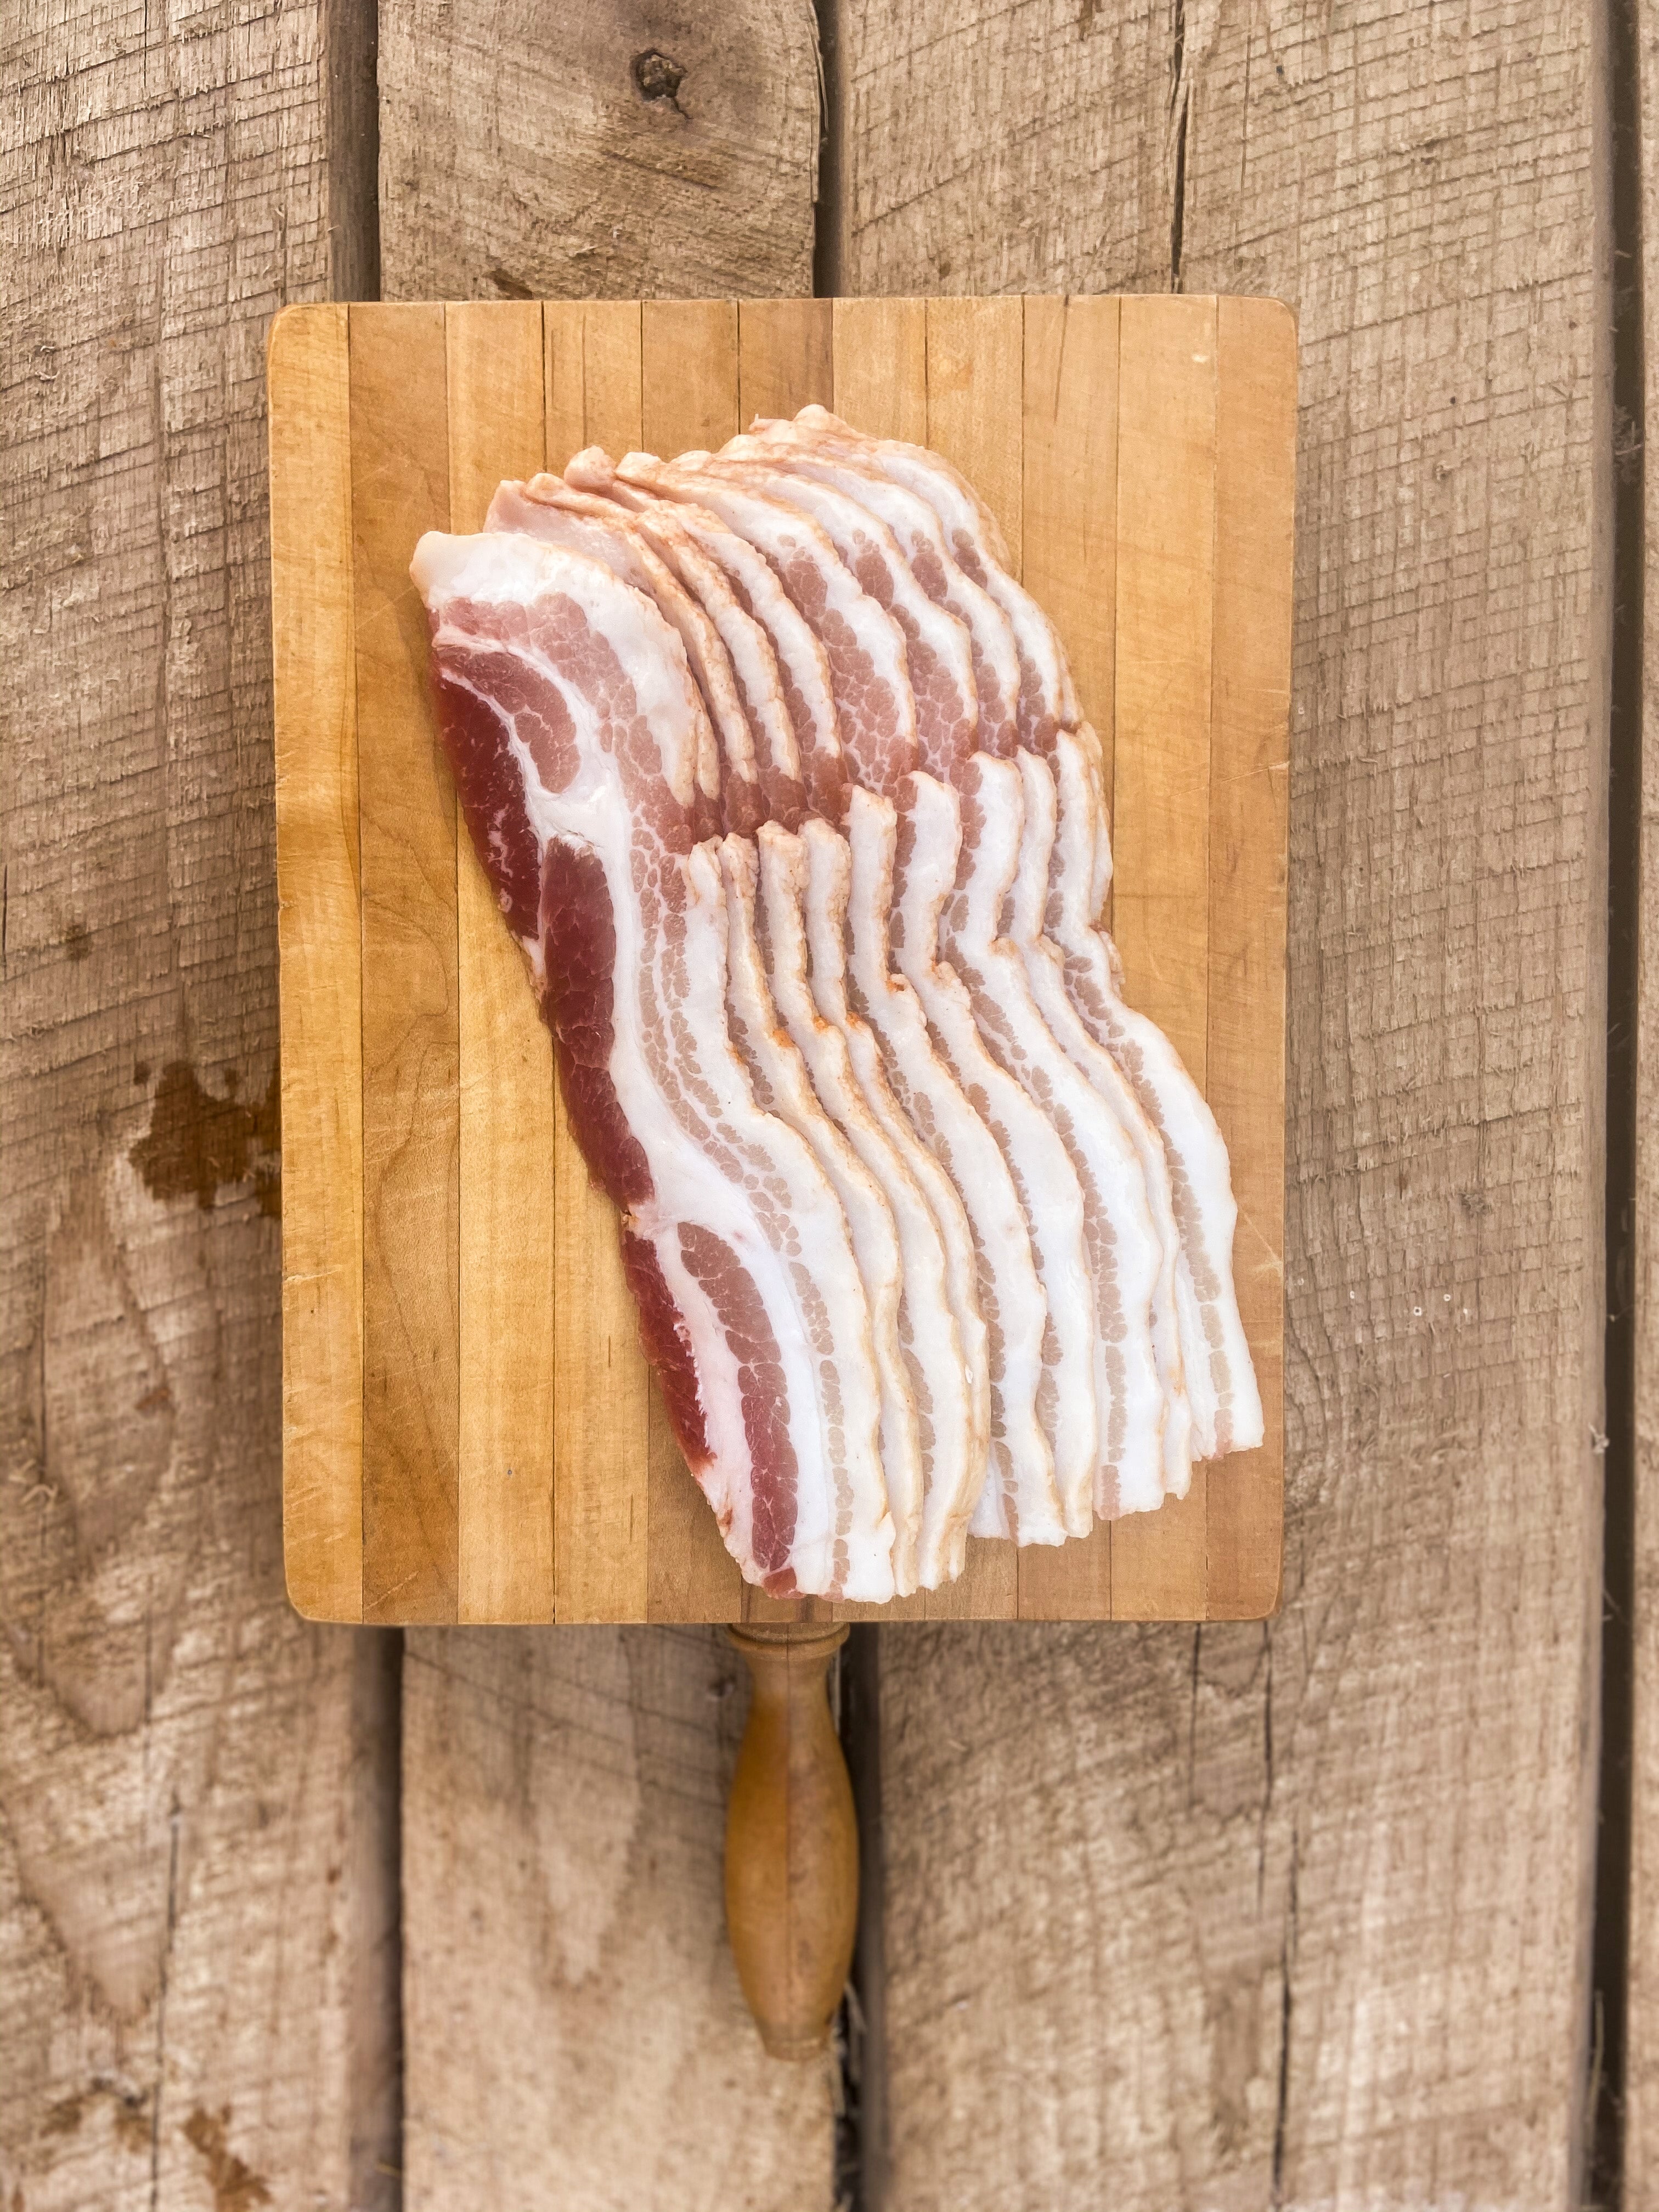 Nitrite Free Hickory Bacon